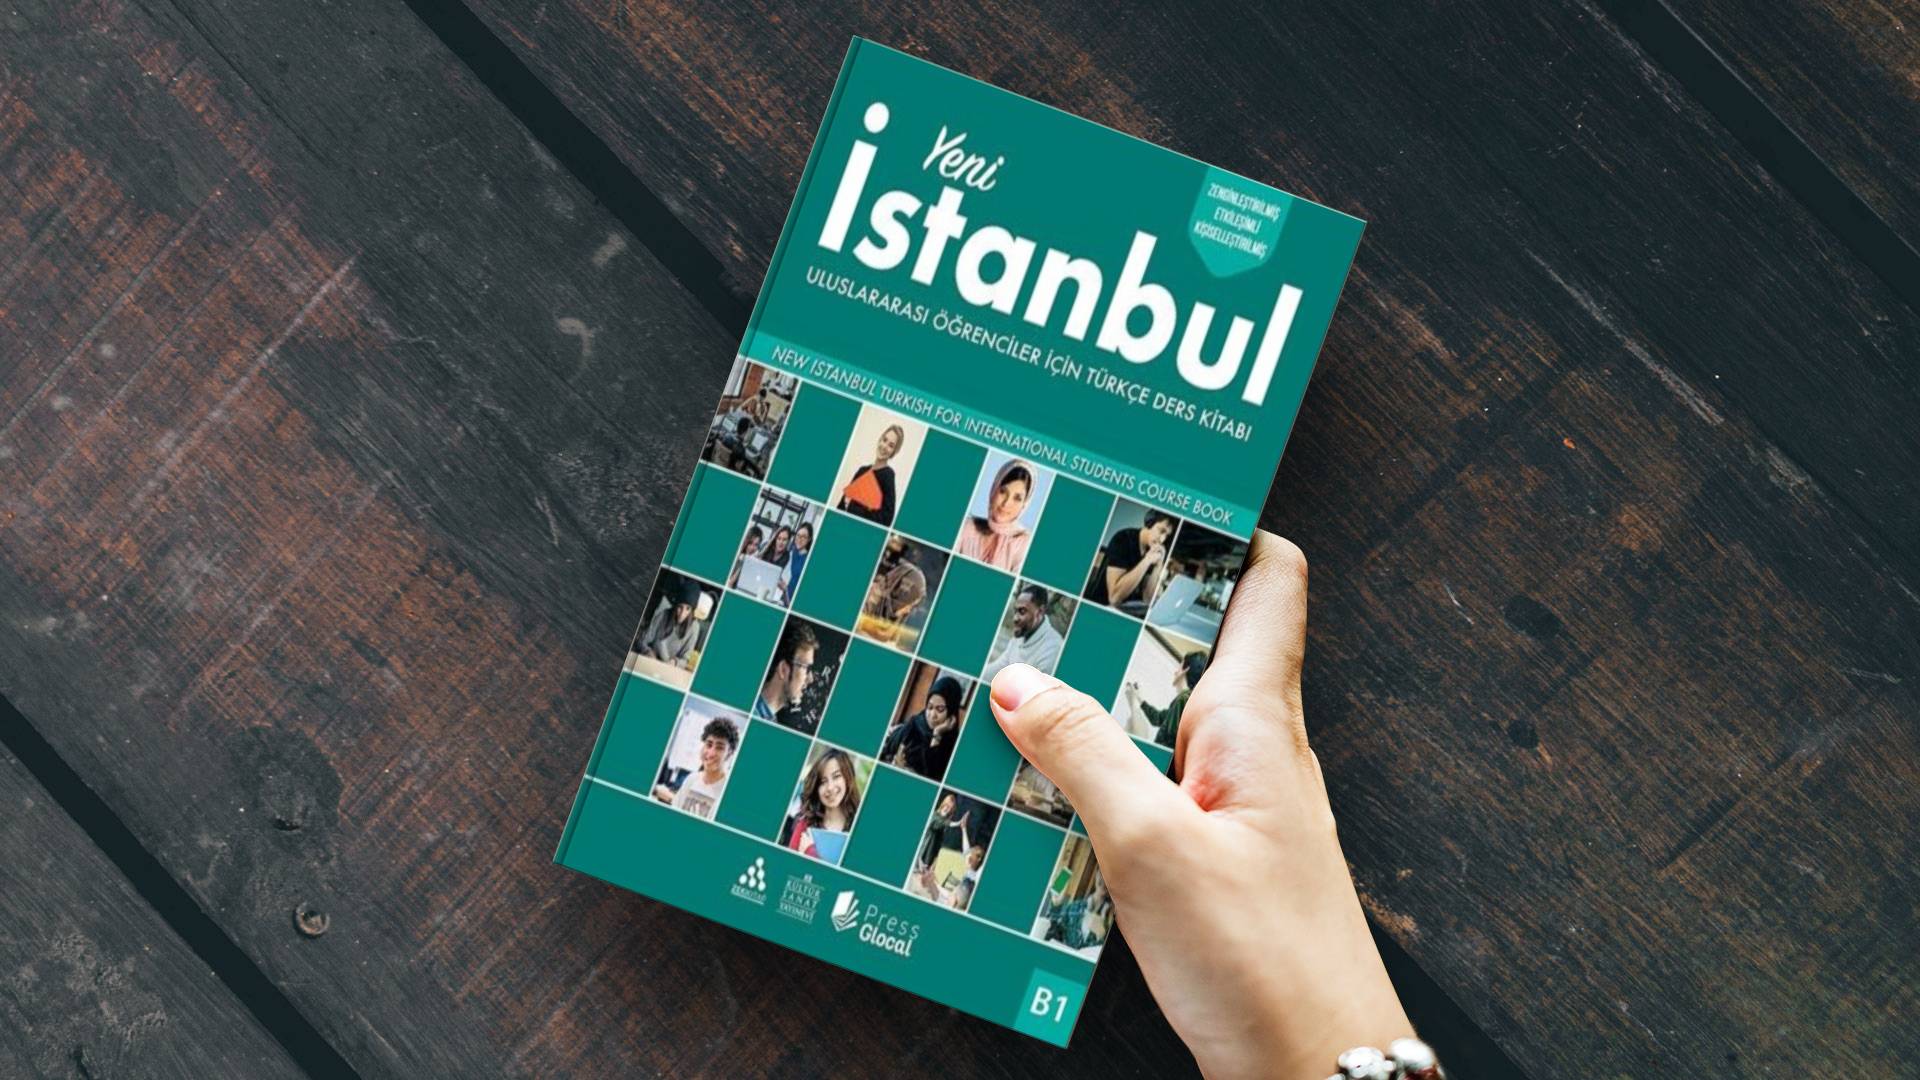 خرید کتاب زبان ترکی استانبولی | فروشگاه اینترنتی کتاب زبان | Yeni Istanbul B1 | کتاب ینی استانبول B1